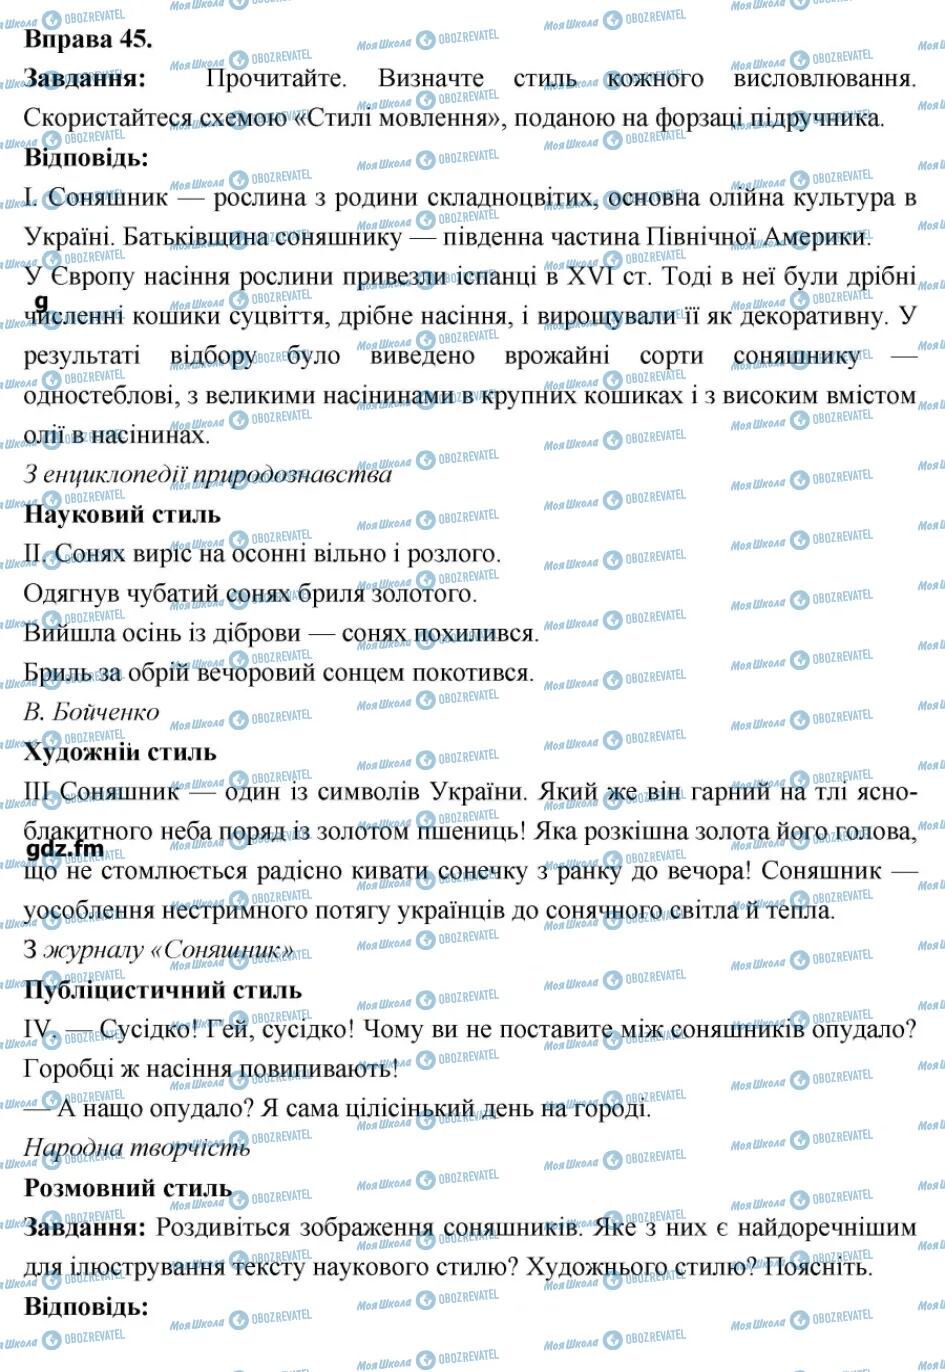 ГДЗ Українська мова 6 клас сторінка 45